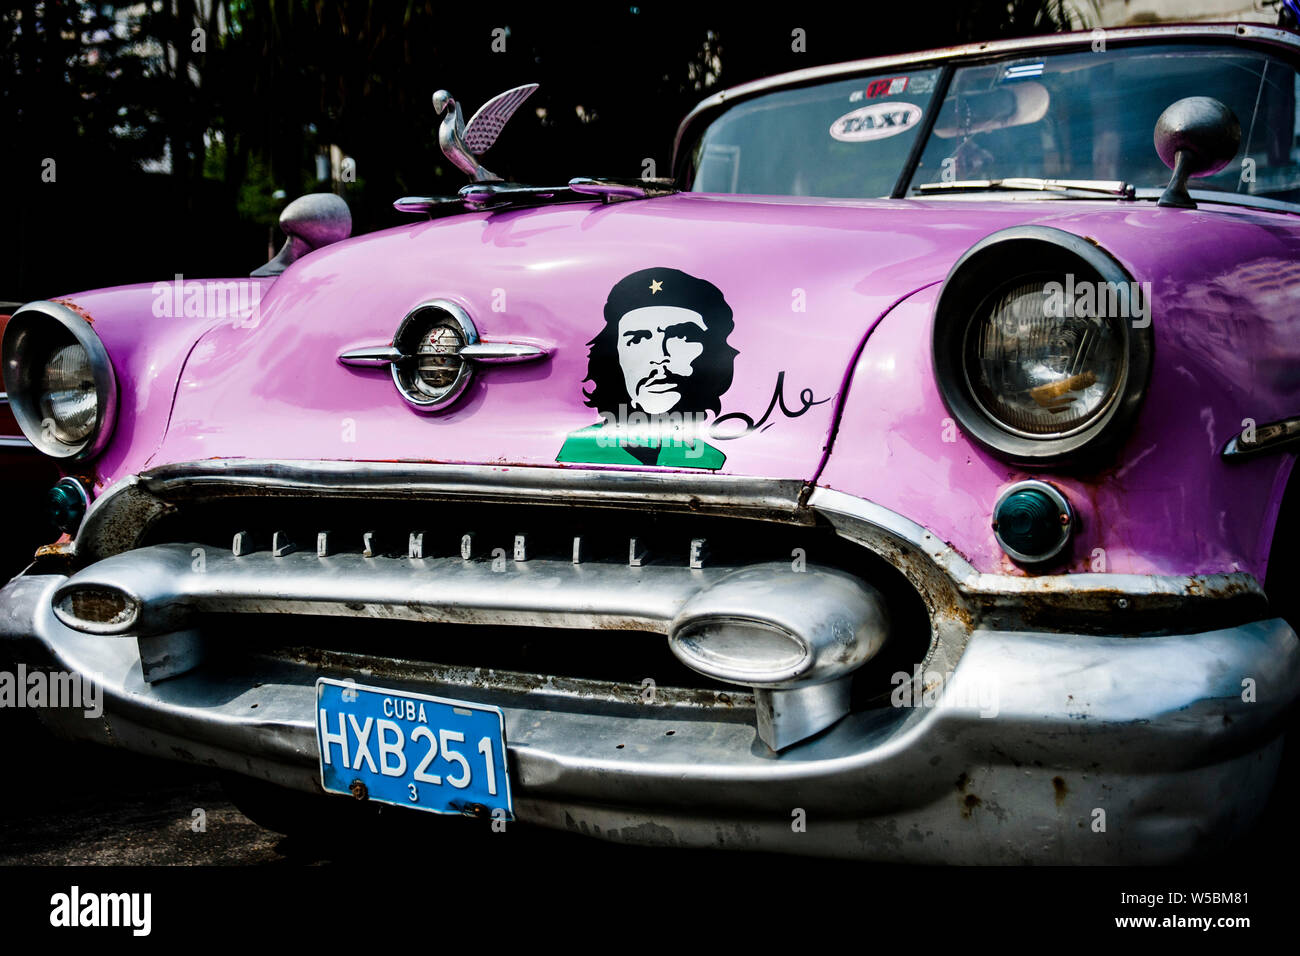 Immagine di eroe rivoluzionario e icona di Che Guevara sulla parte anteriore di un classico cubano auto taxi a l'Avana, Cuba Foto Stock